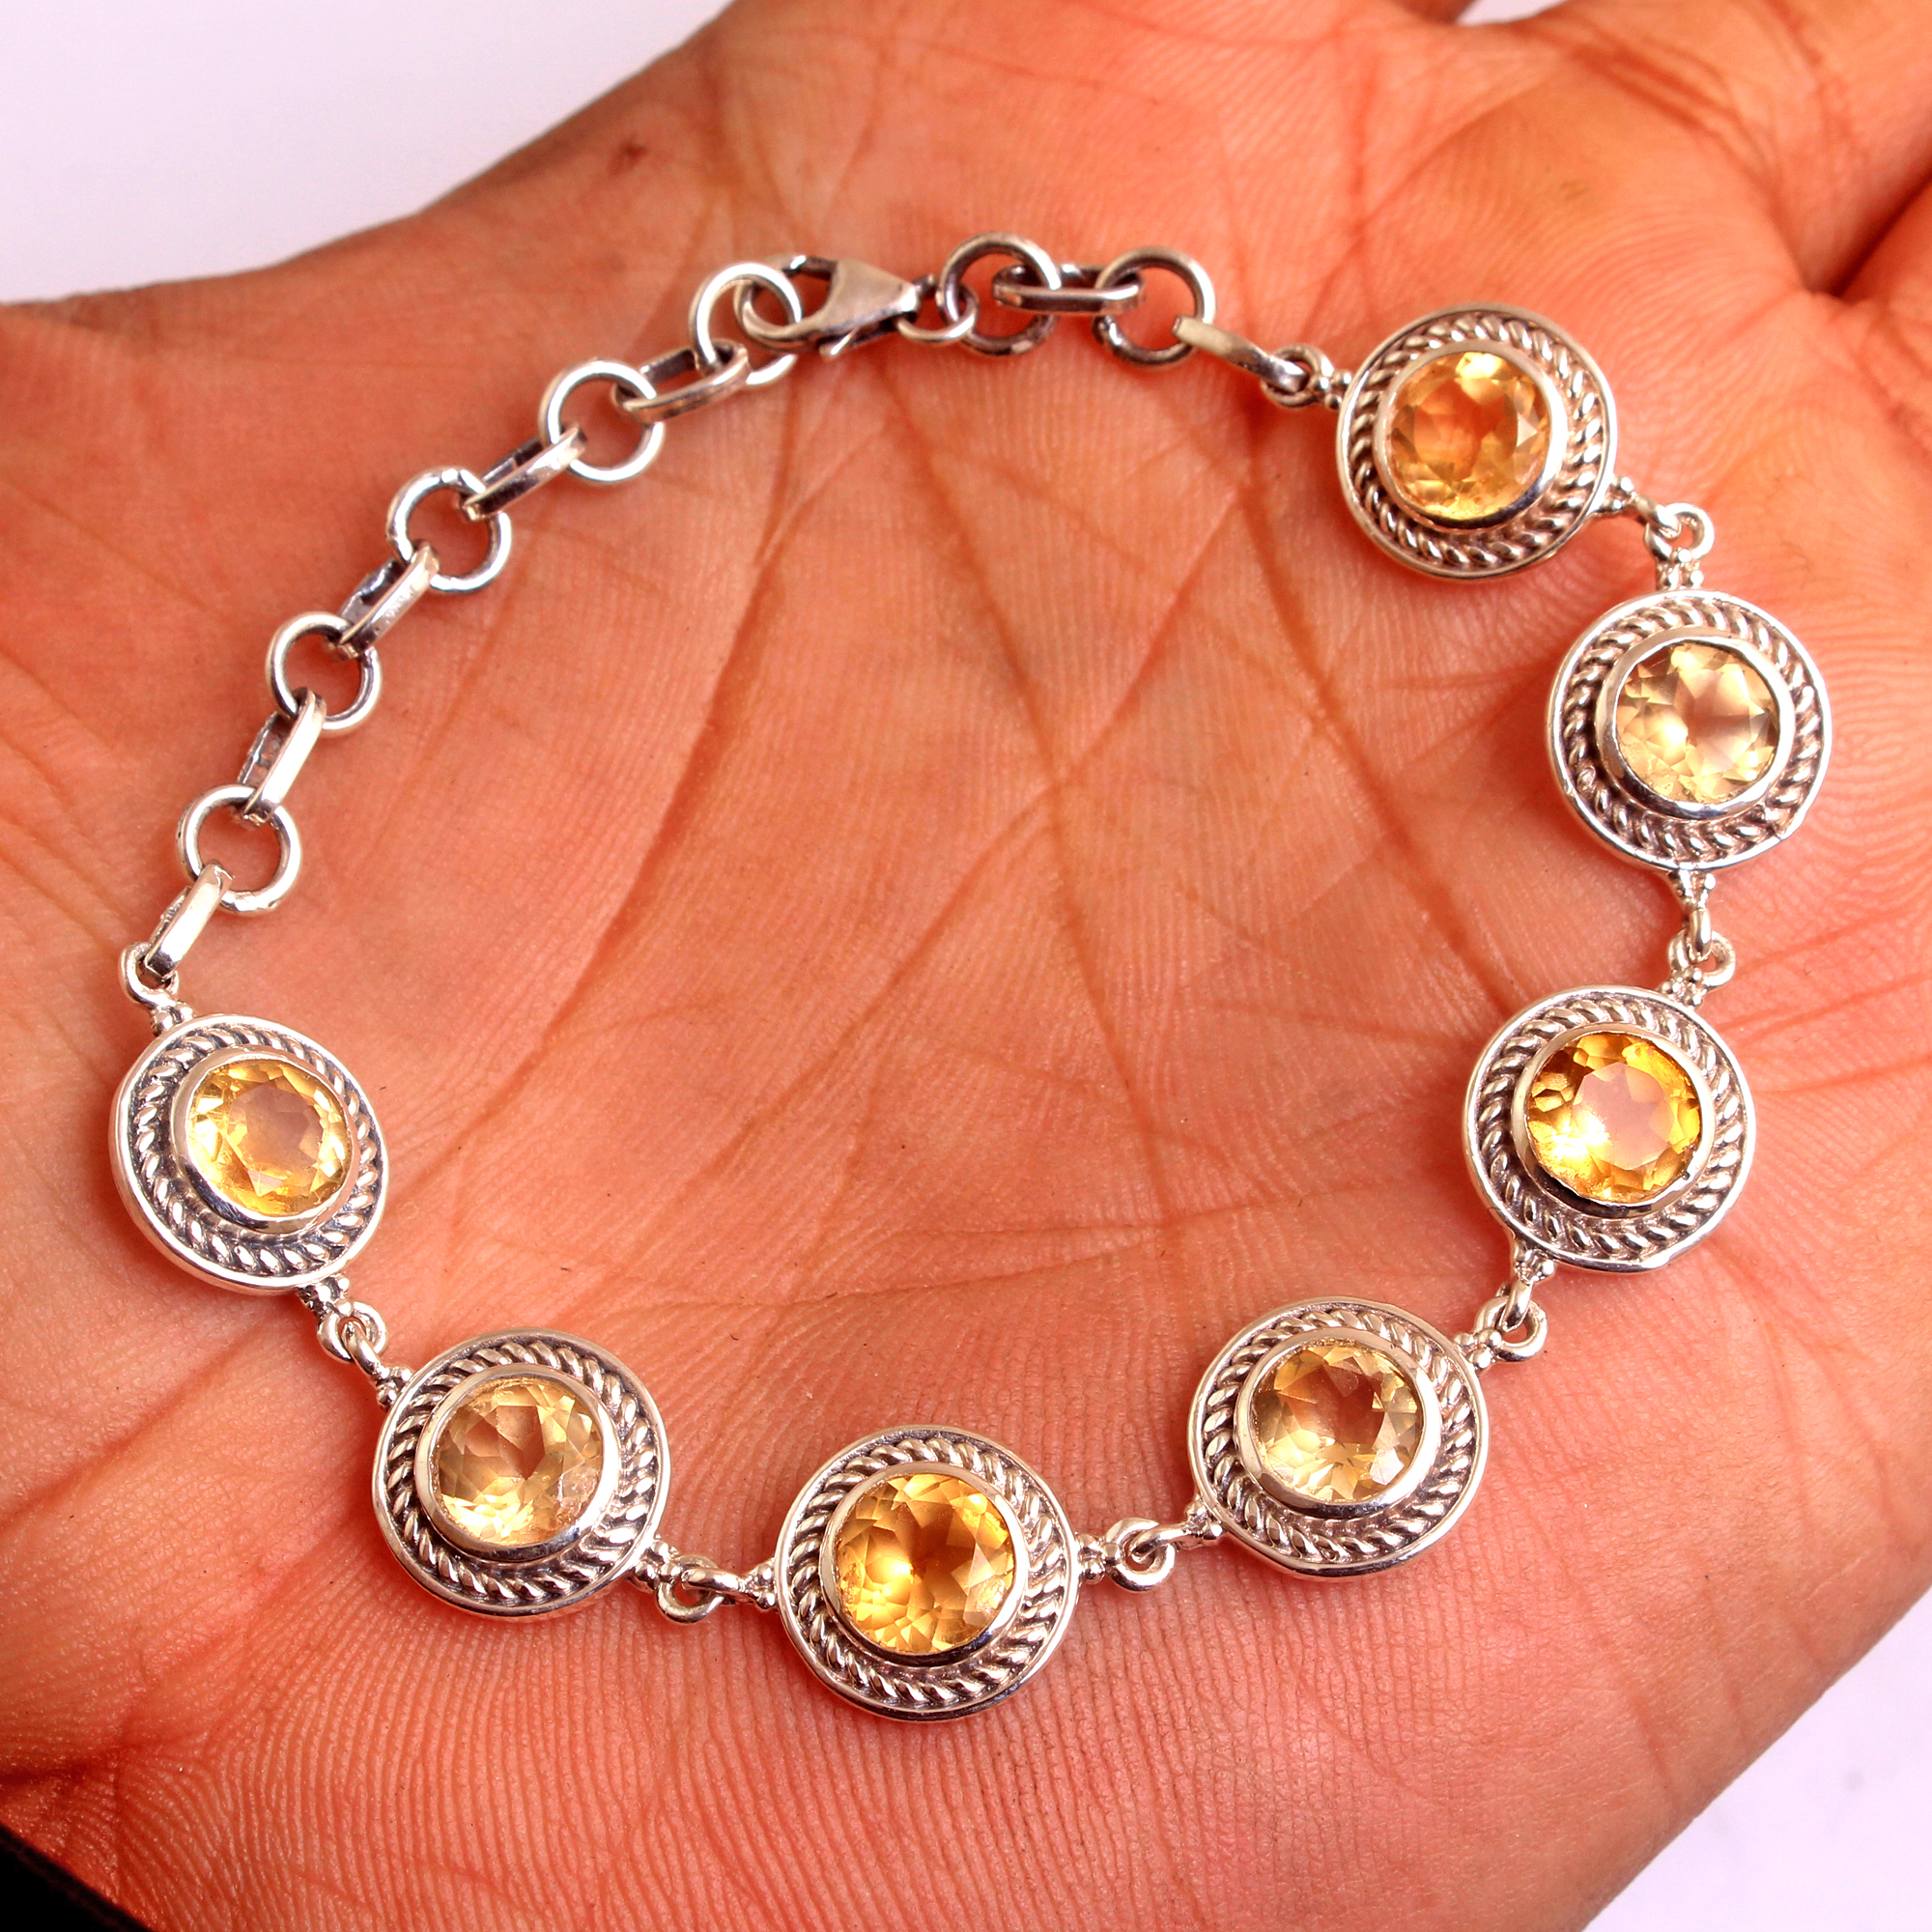 Gemstone Jewelry Gift For Her Handmade Jewelry Silver Bracelet Silver Jewelry Statement Jewelry Unisex Jewelry